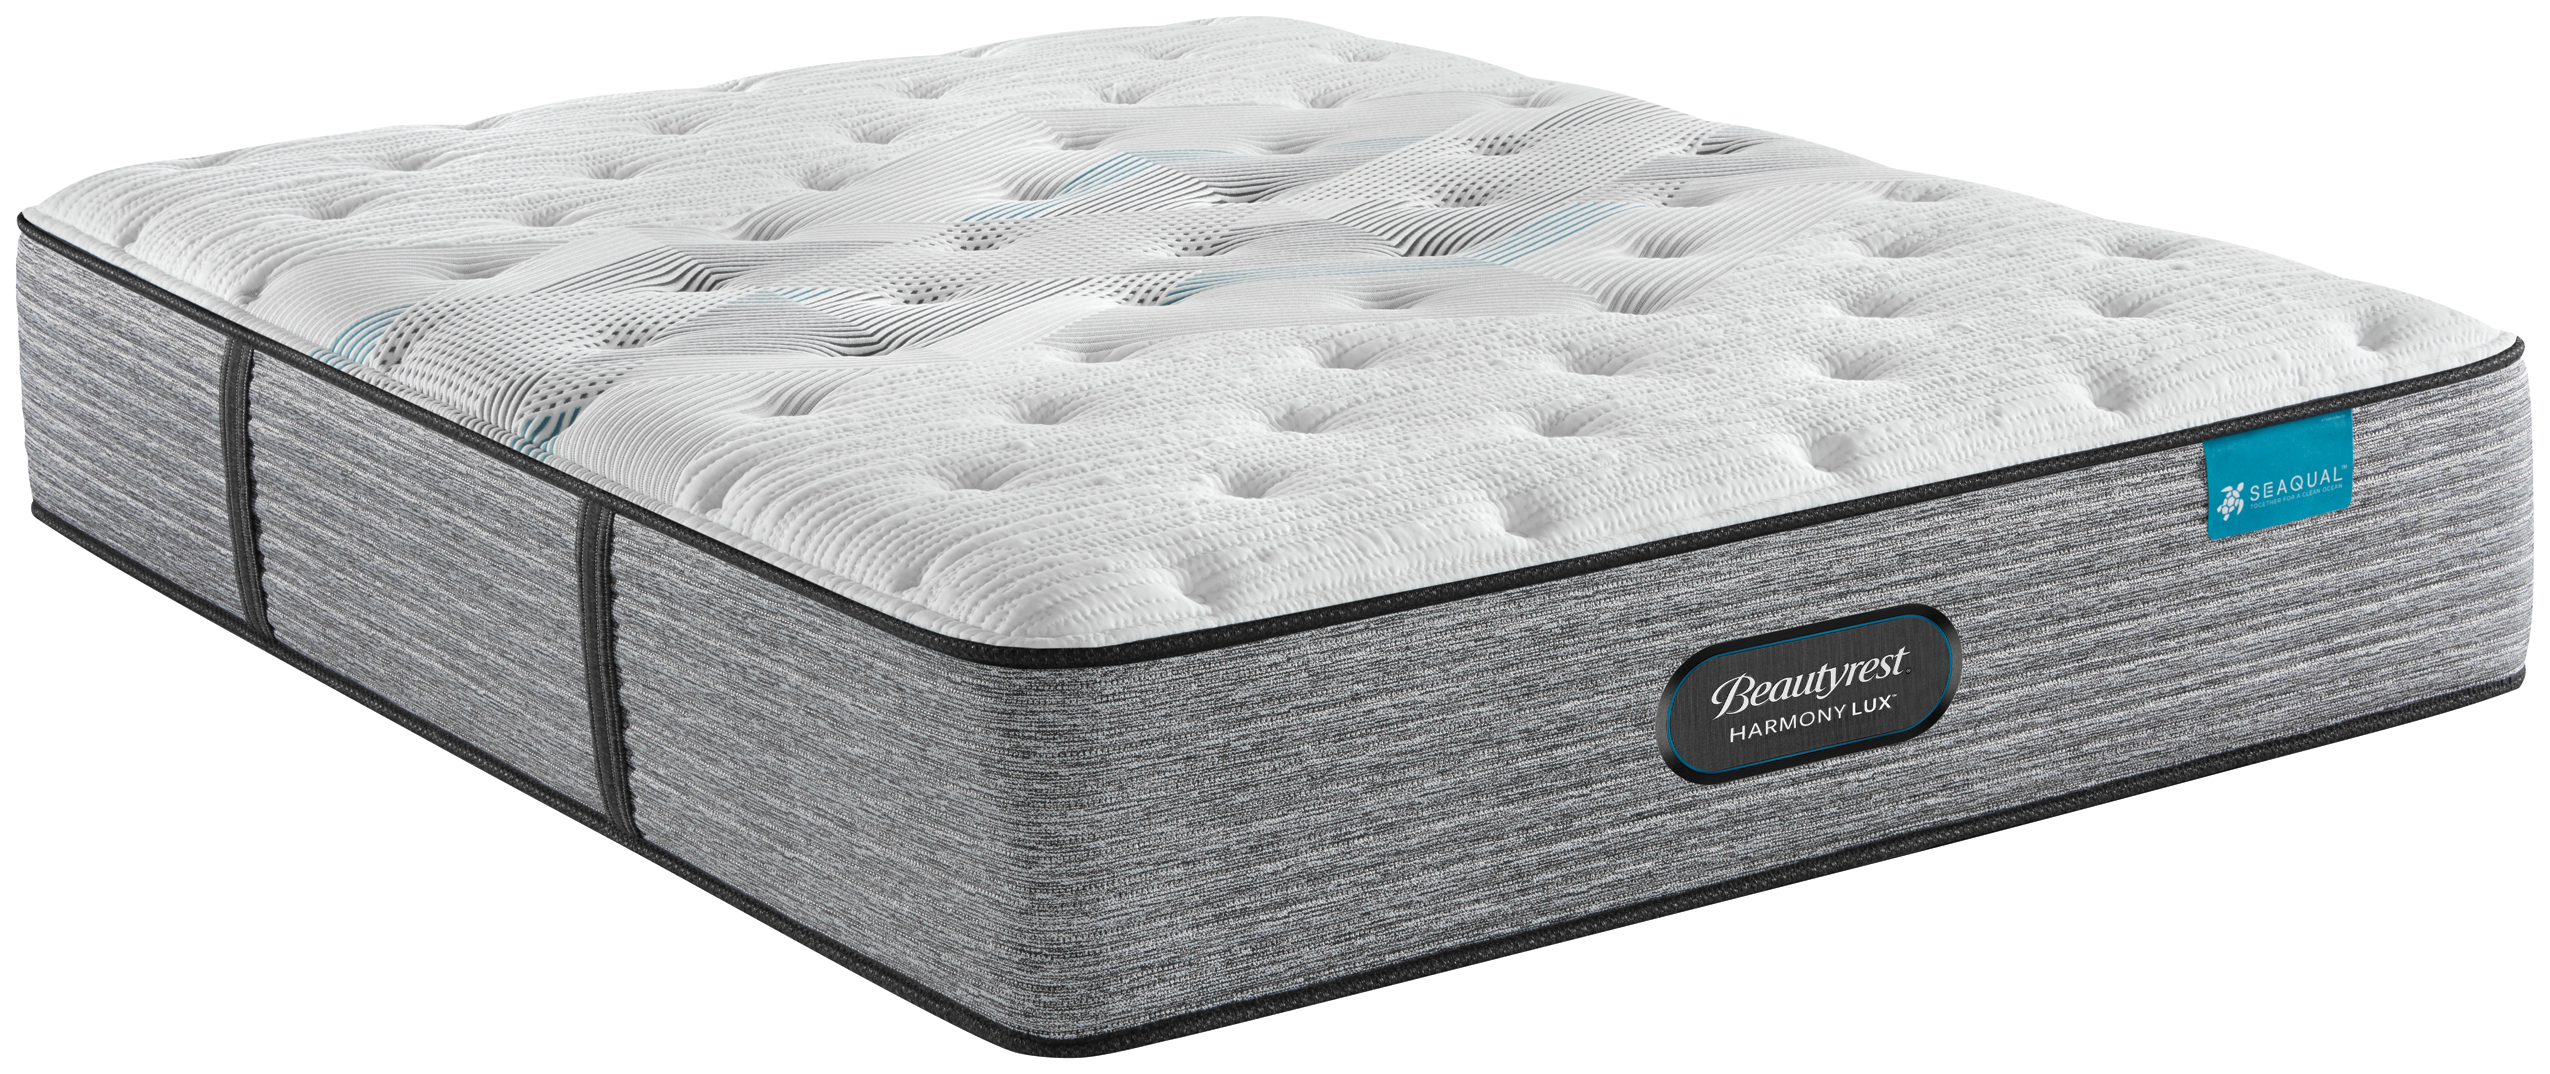 beautyrest landon springs extra firm queen mattress